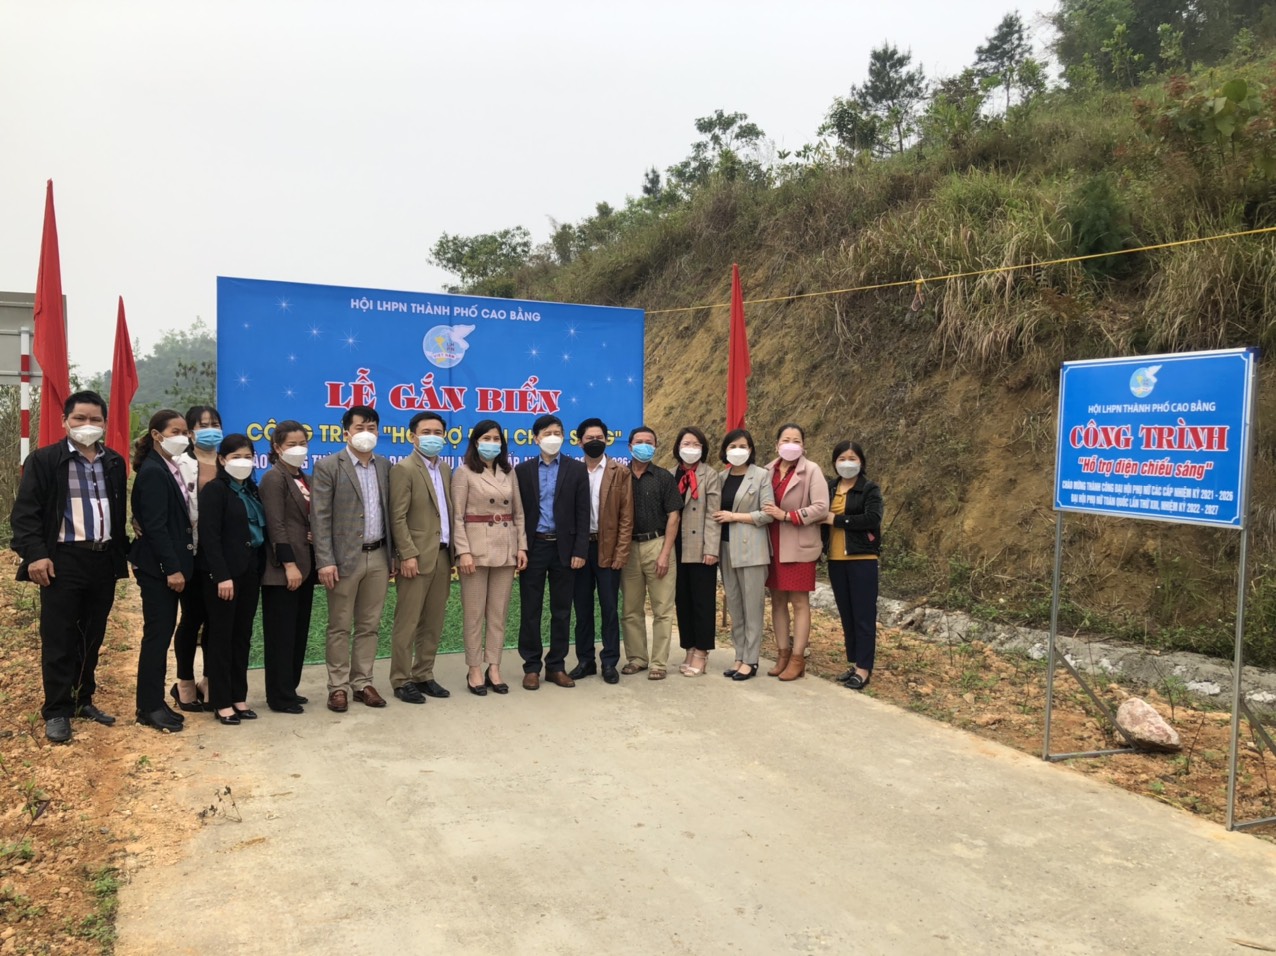 Hội LHPN thành phố Cao Bằng với các công trình, phần việc chào mừng thành công Đại hội đại biểu phụ nữ toàn quốc lần thứ XIII